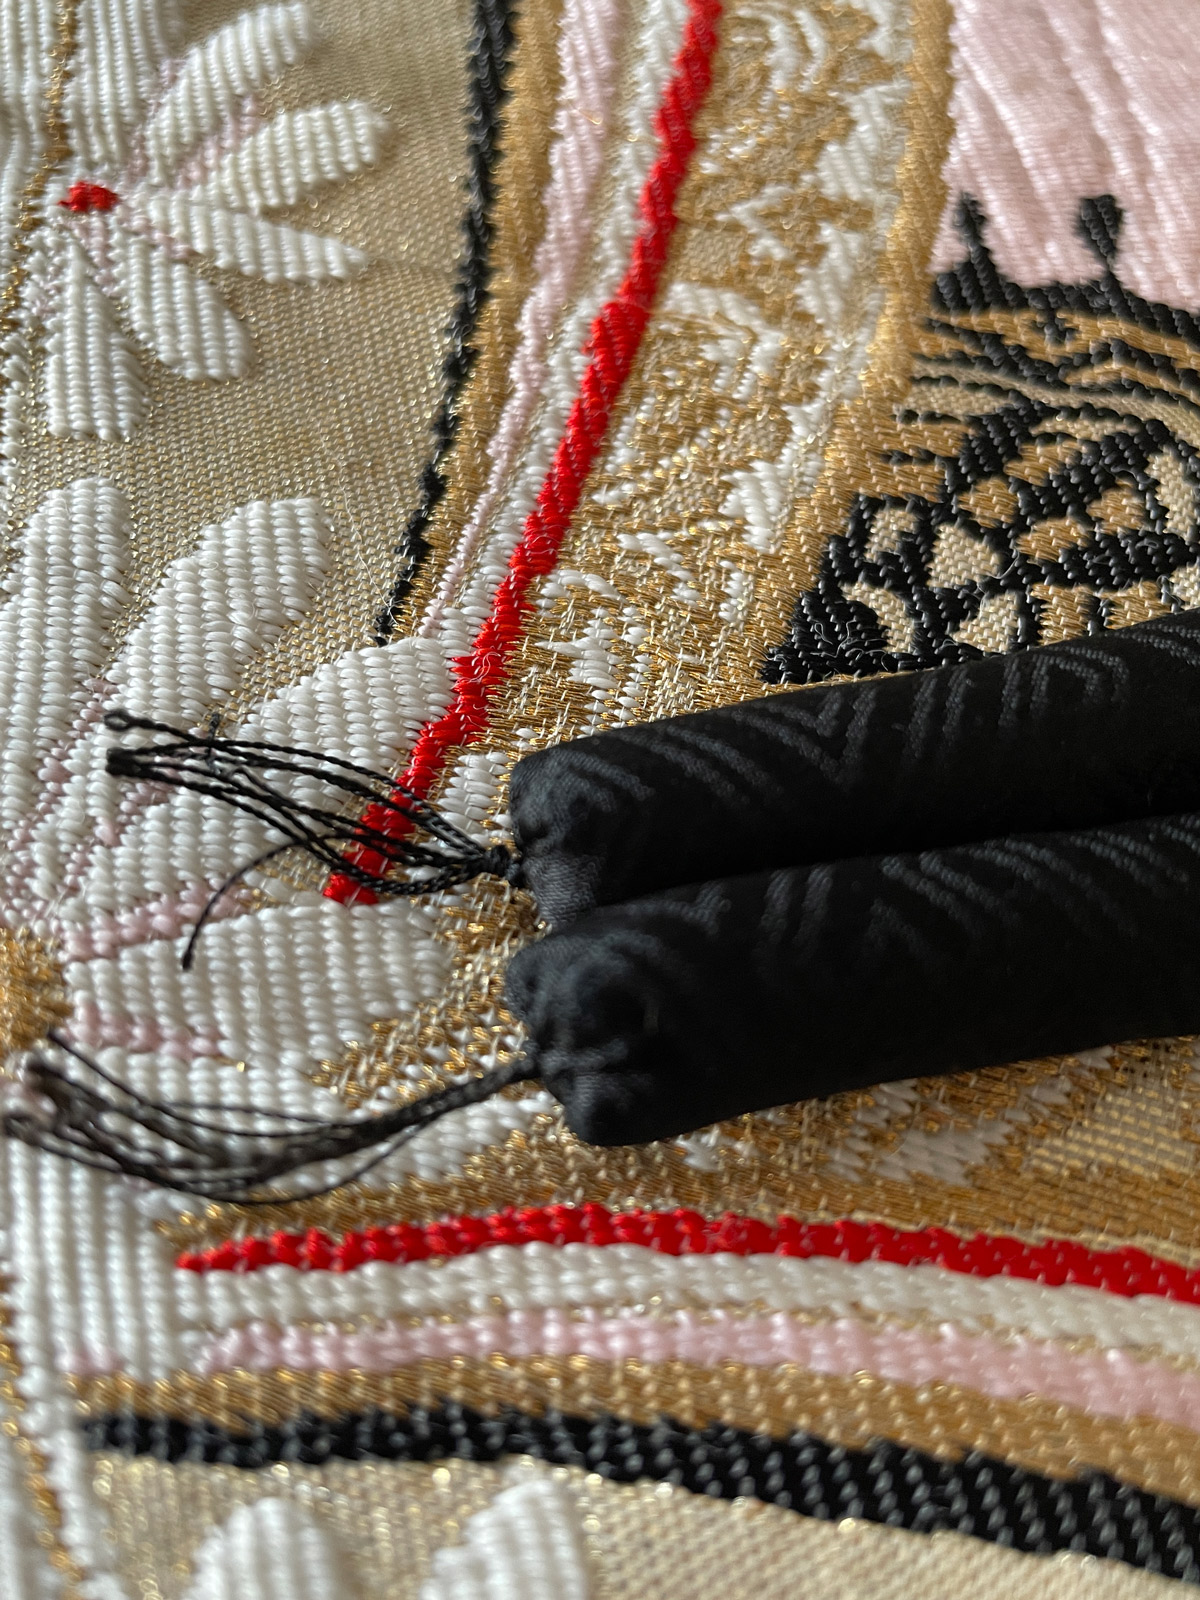 Rounded cord (Obijime) in black silk